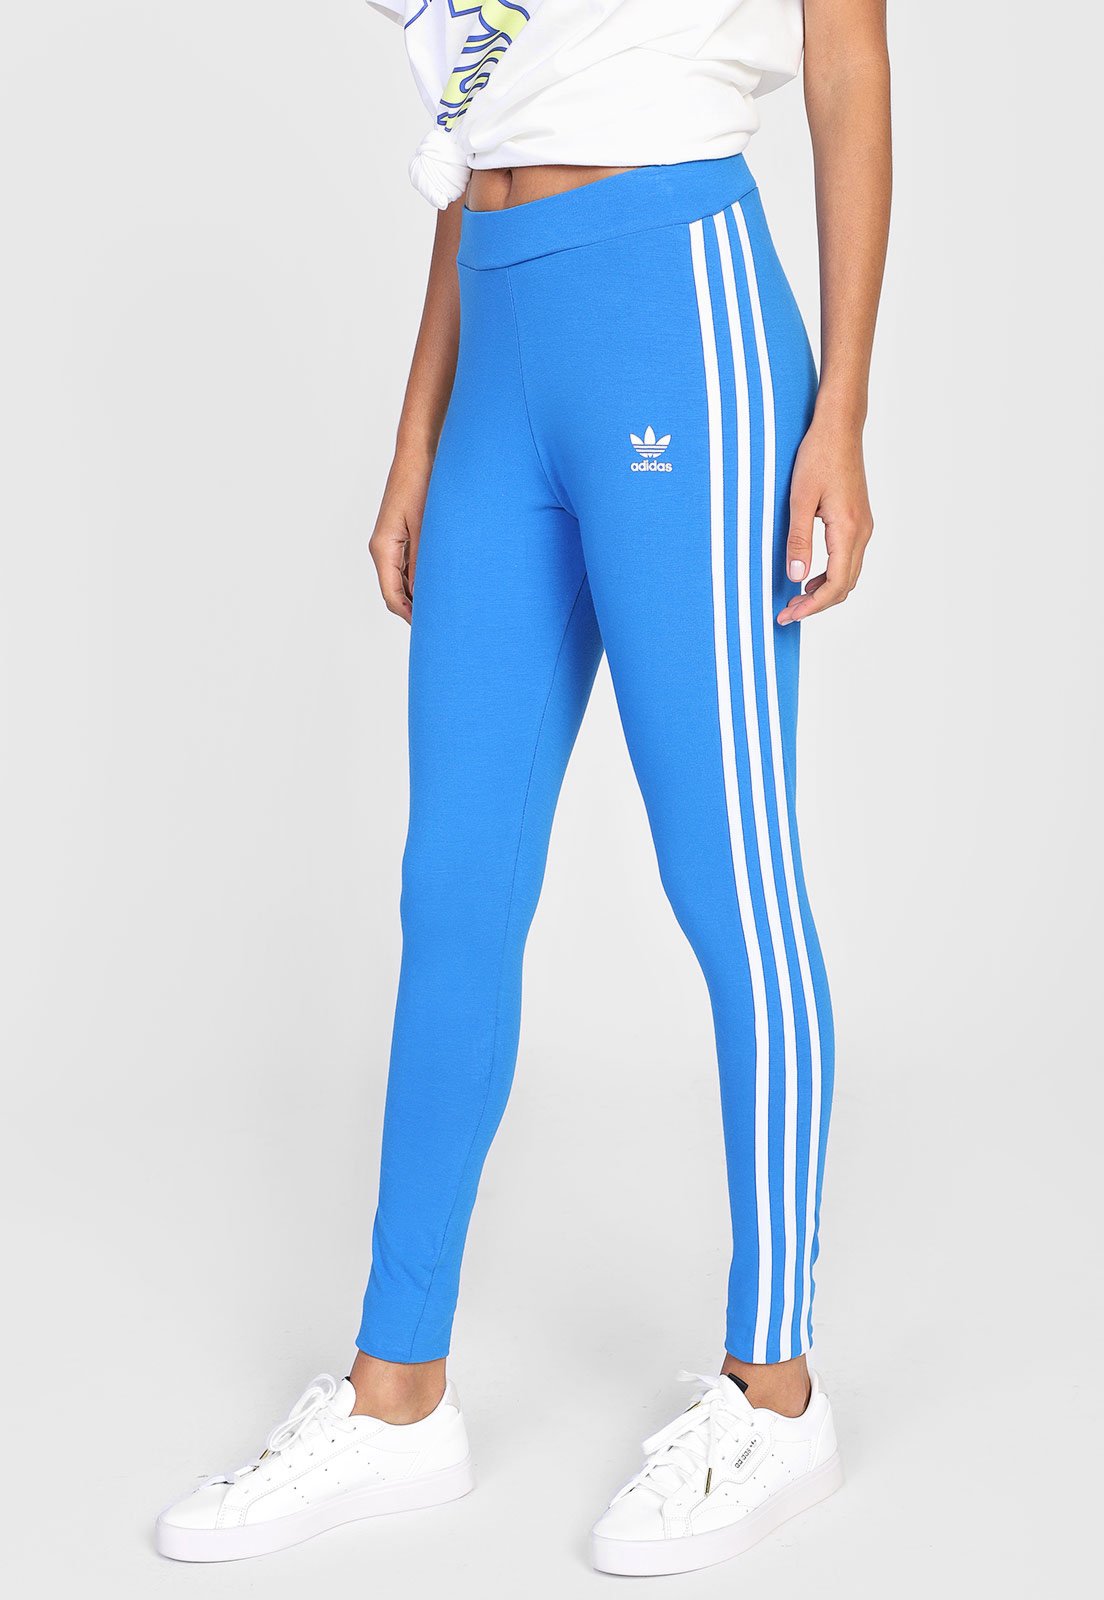 Calça Legging Adidas 3 Stripes Feminina Azul 